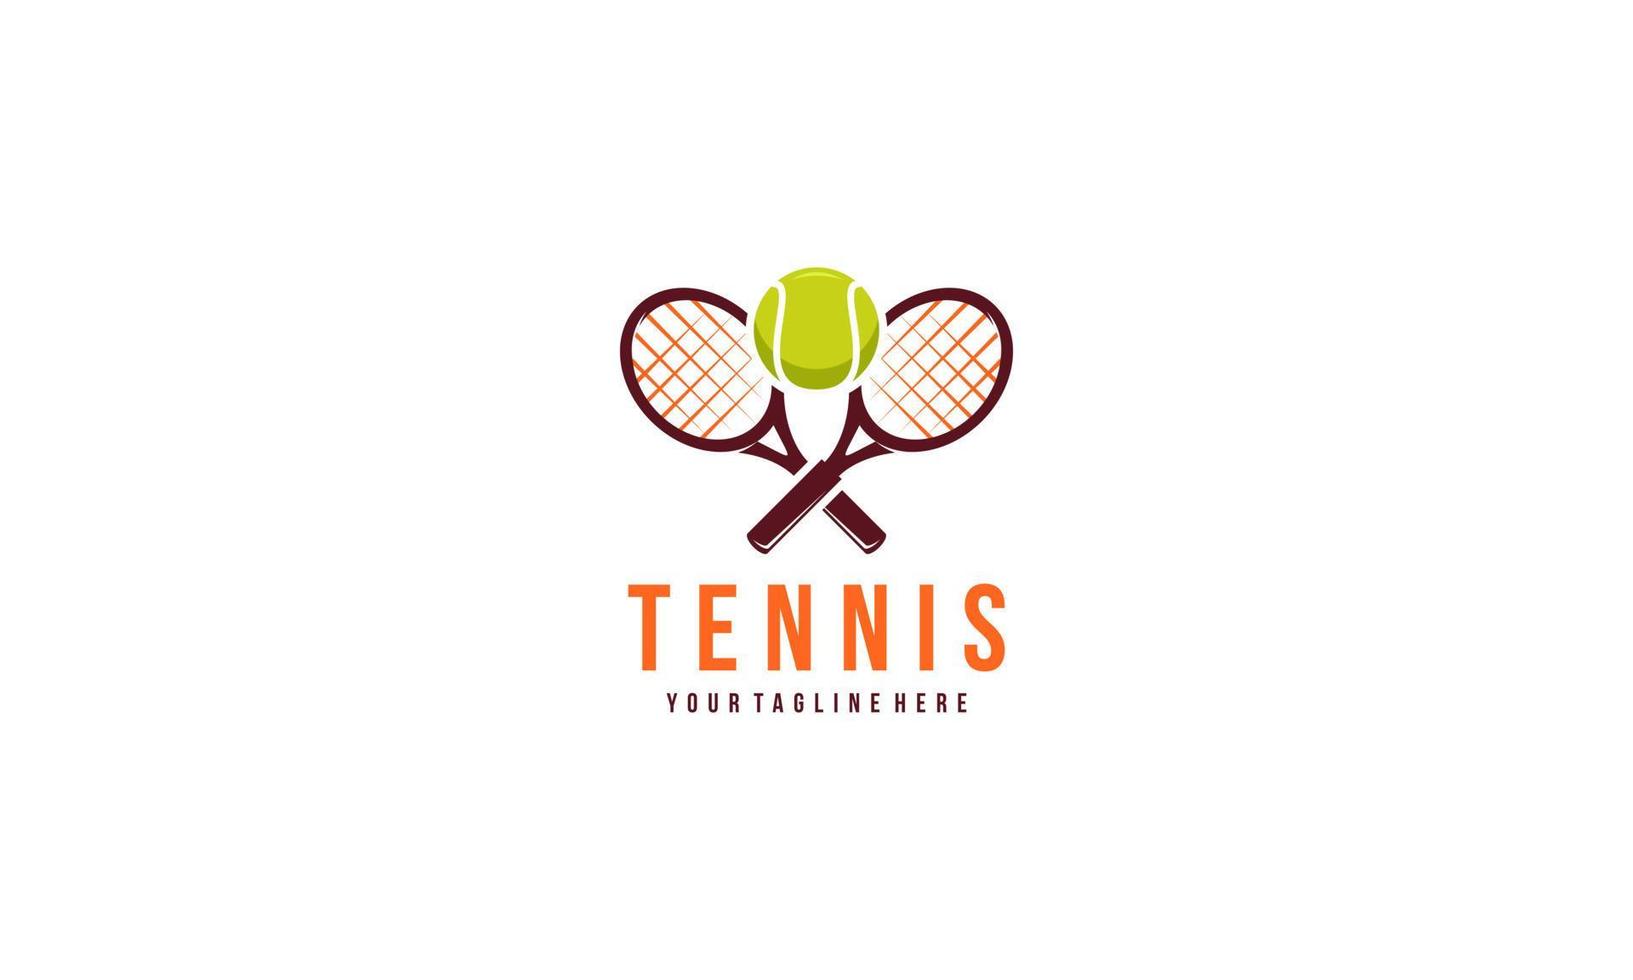 tenis raqueta y pelota logo diseño vector